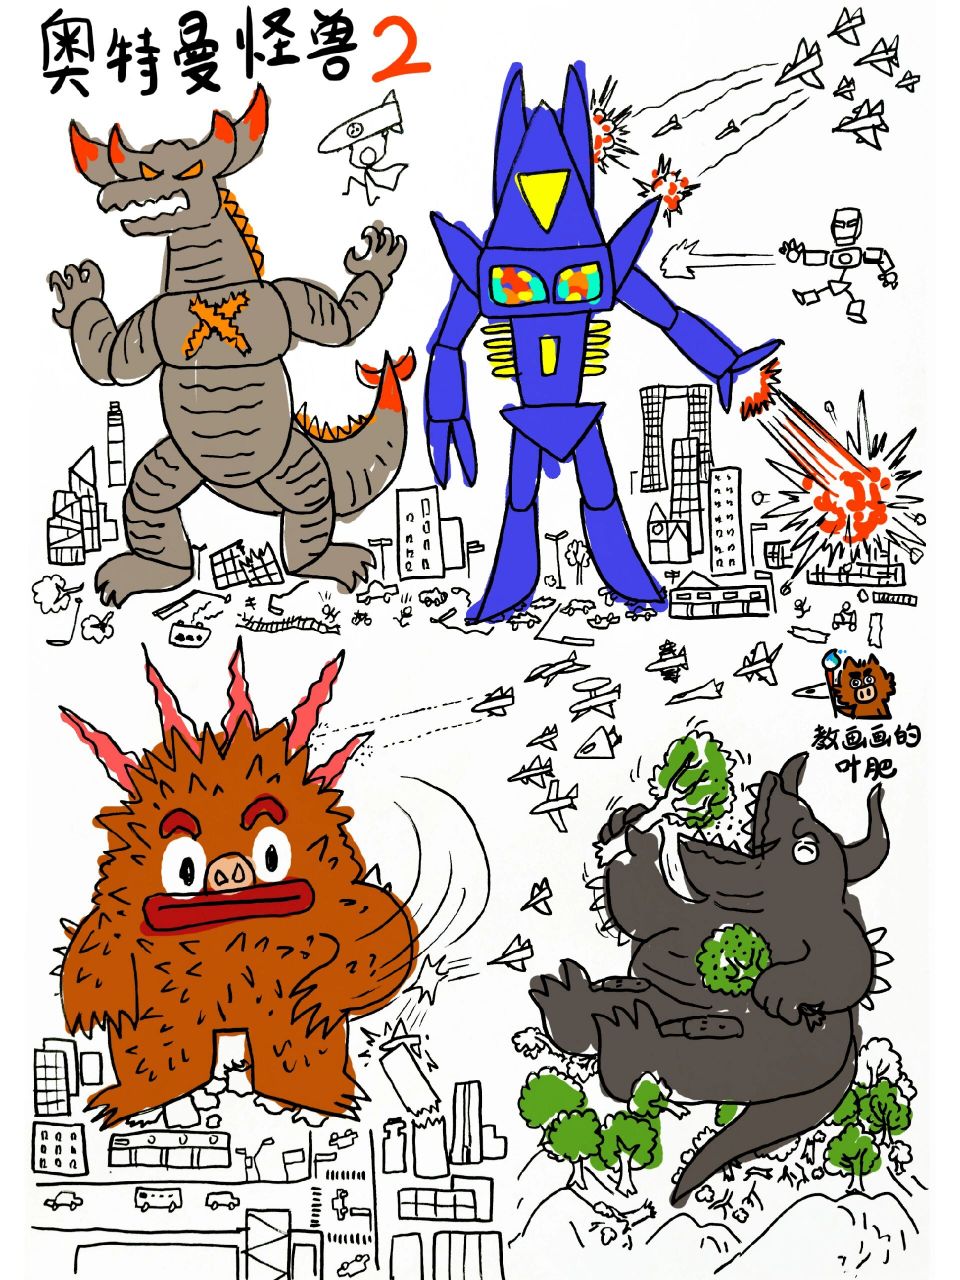 奥特曼怪兽城市作战,创意儿童画简笔画教程 参考了奥特曼的怪兽,不过